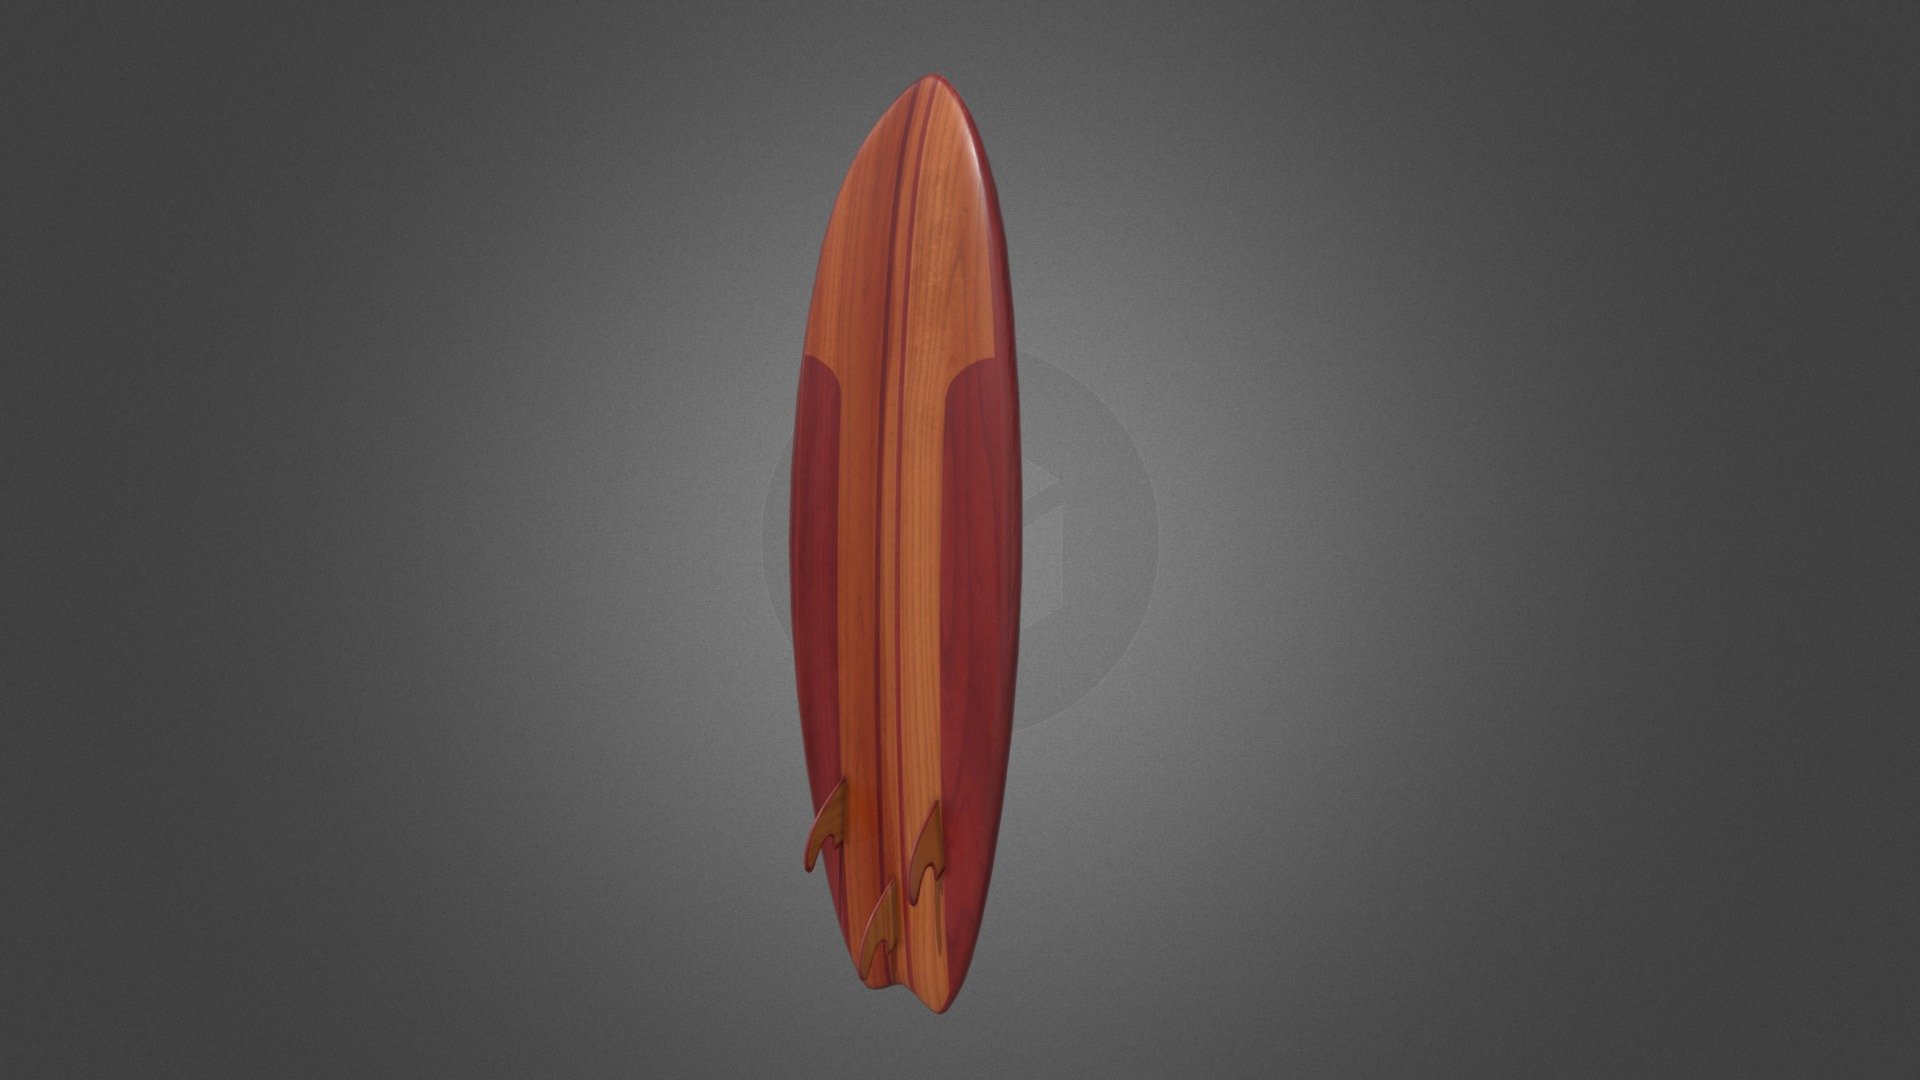 3D model of a wooden surfboard - Surfboard / Tabla de surf - Download Free 3D model by jose908abt 3d model